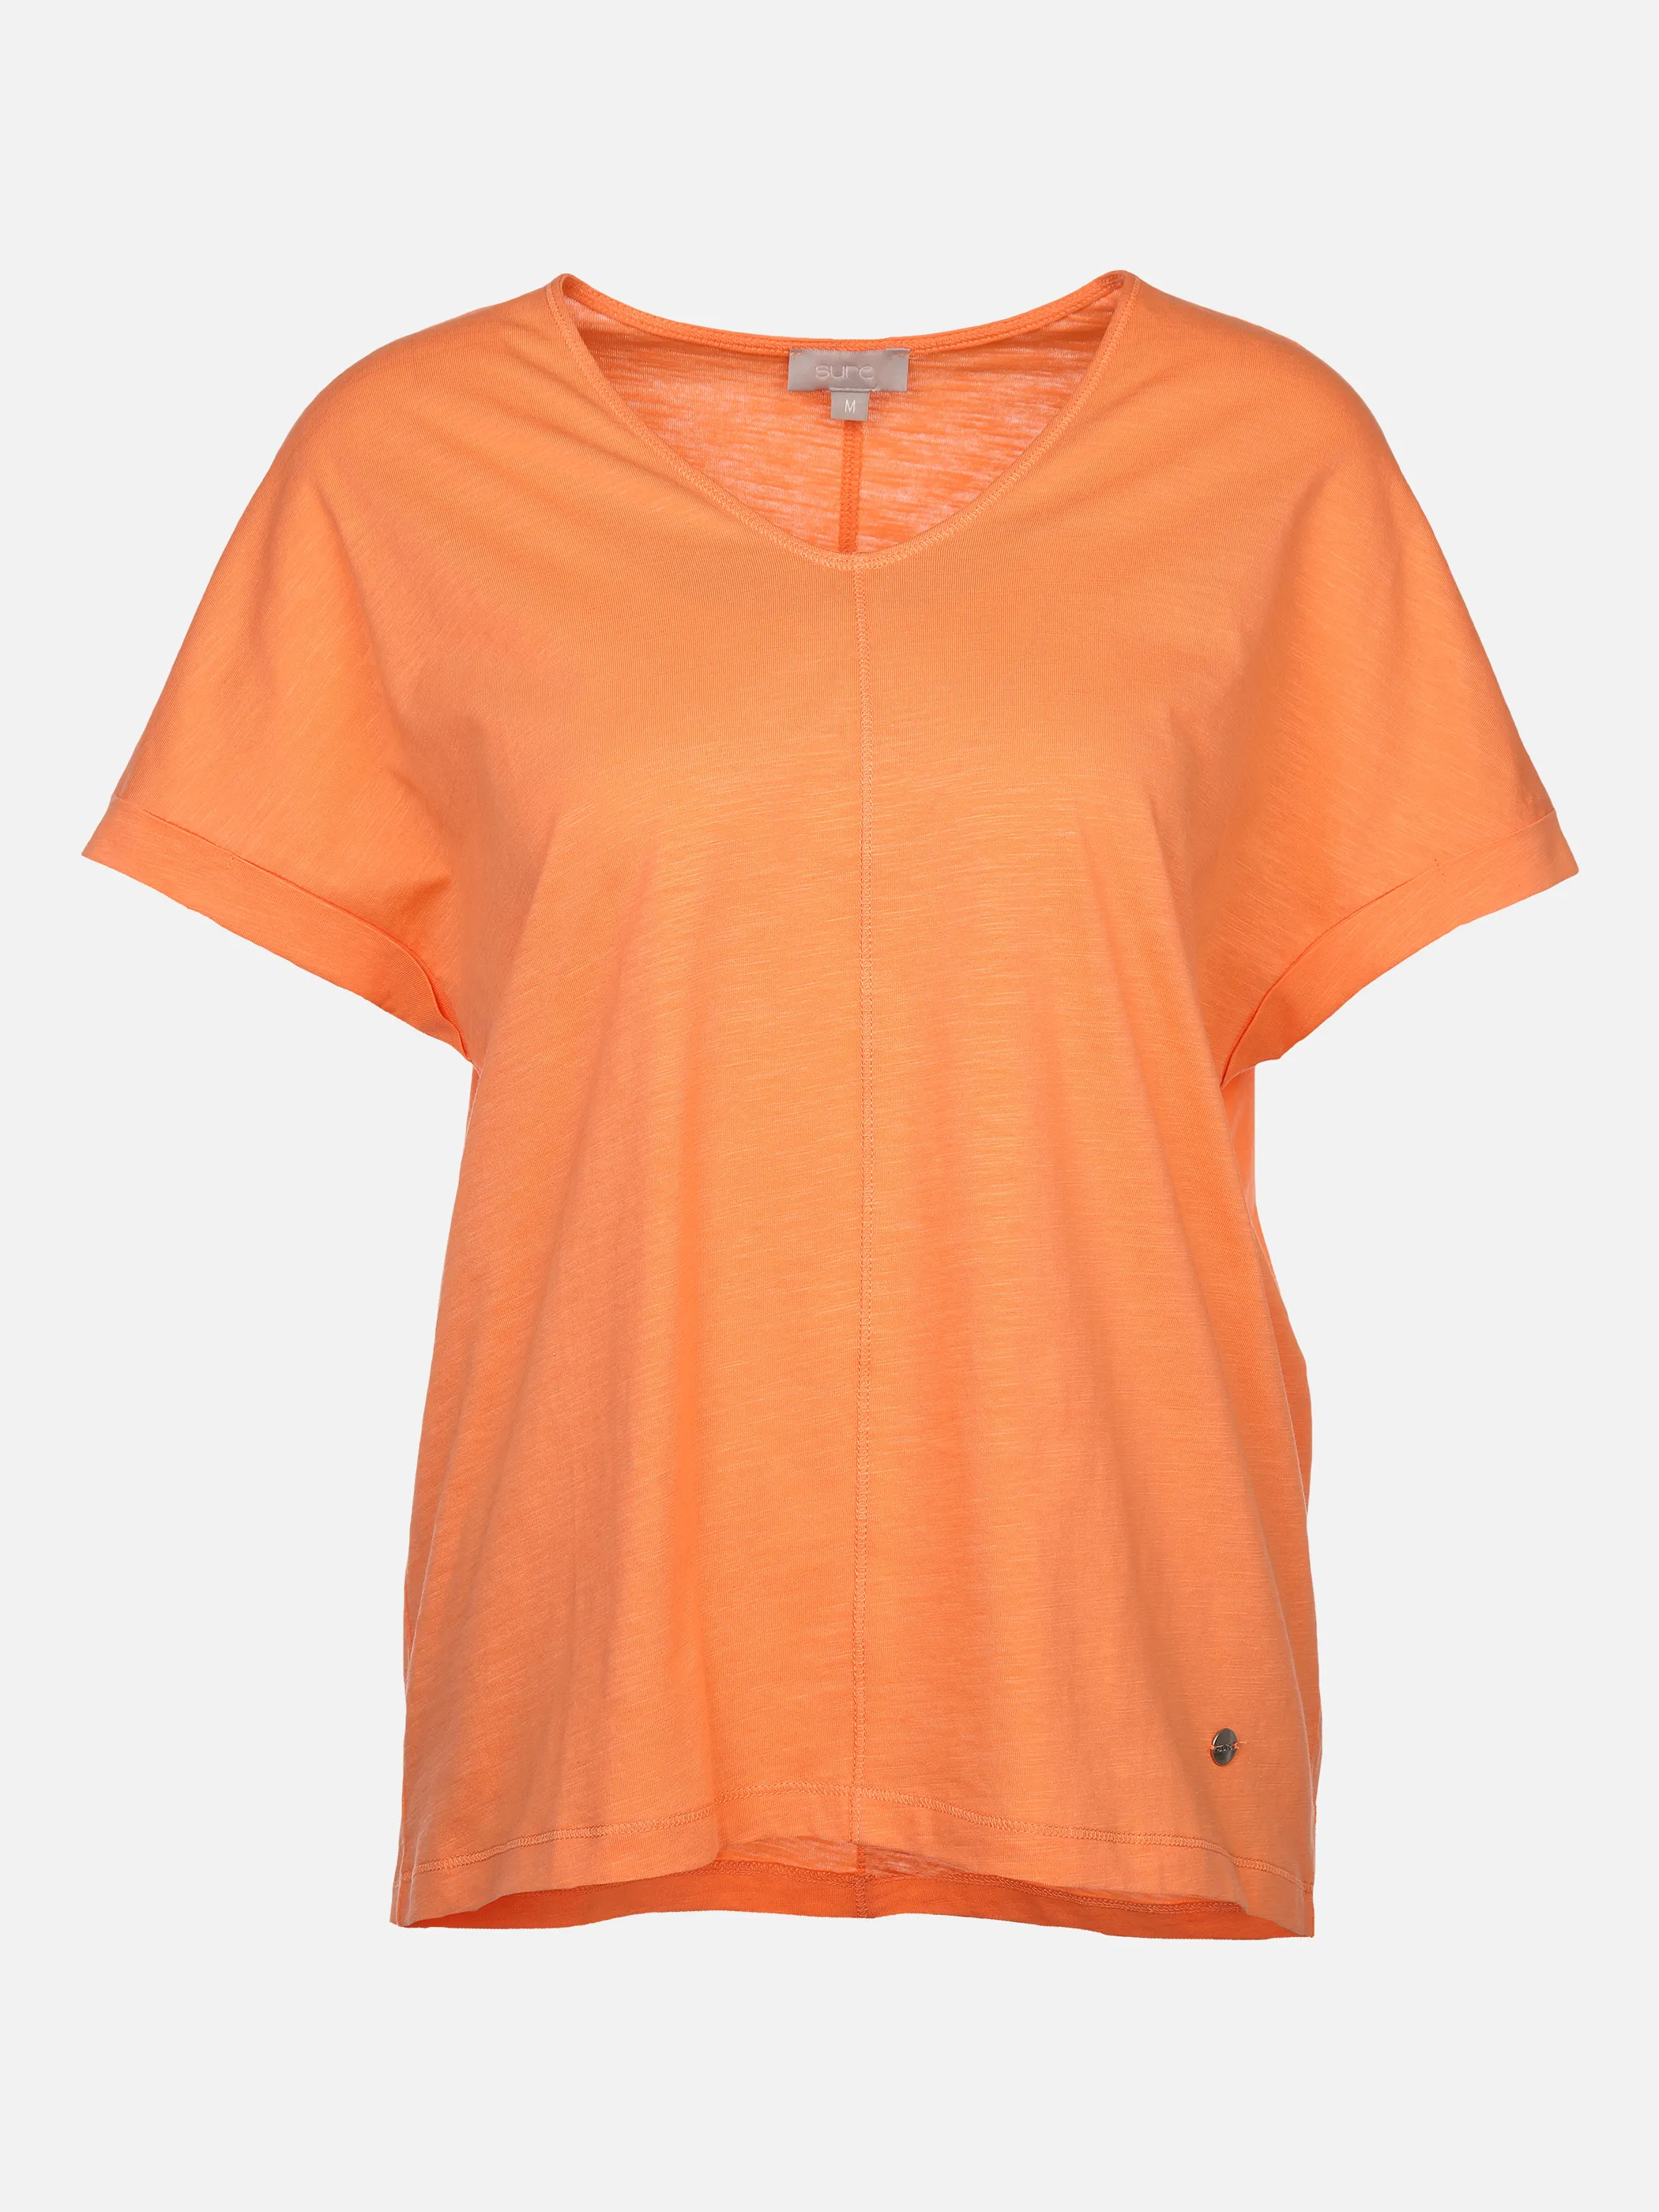 Sure Da-Shirt m.übergroßer Schulter Orange 873373 MELONE 1